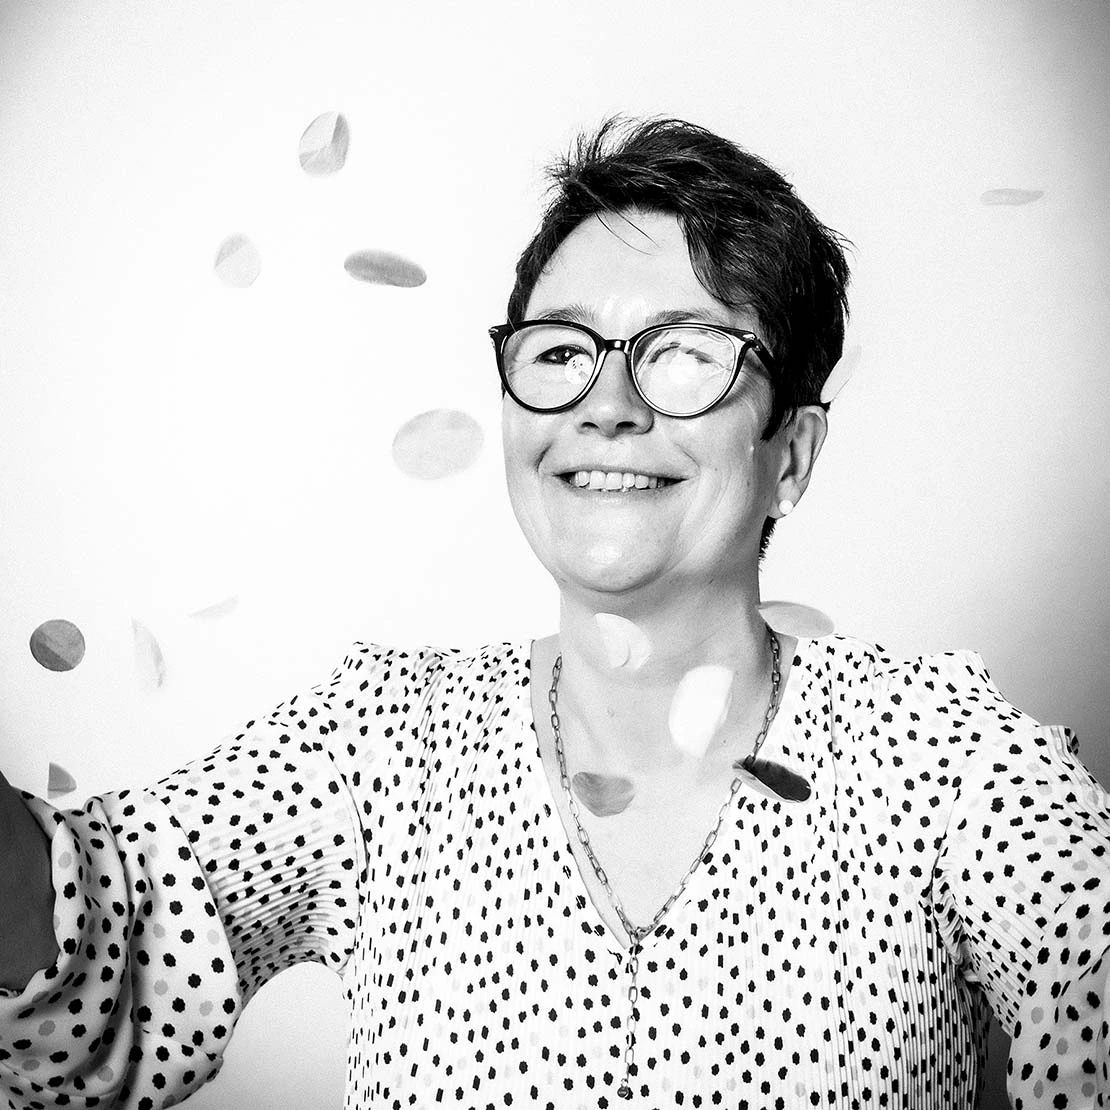 Mitarbeiterfoto in schwarz-weiß von einer Frau, die Konfetti wirft und dabei lacht.  